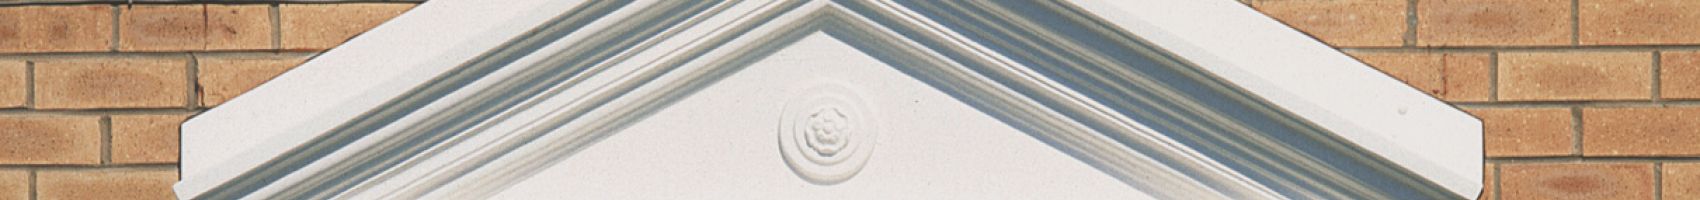 2100mm Victorian Apex Top Door Surround Anthracite Grey (RAL7016)